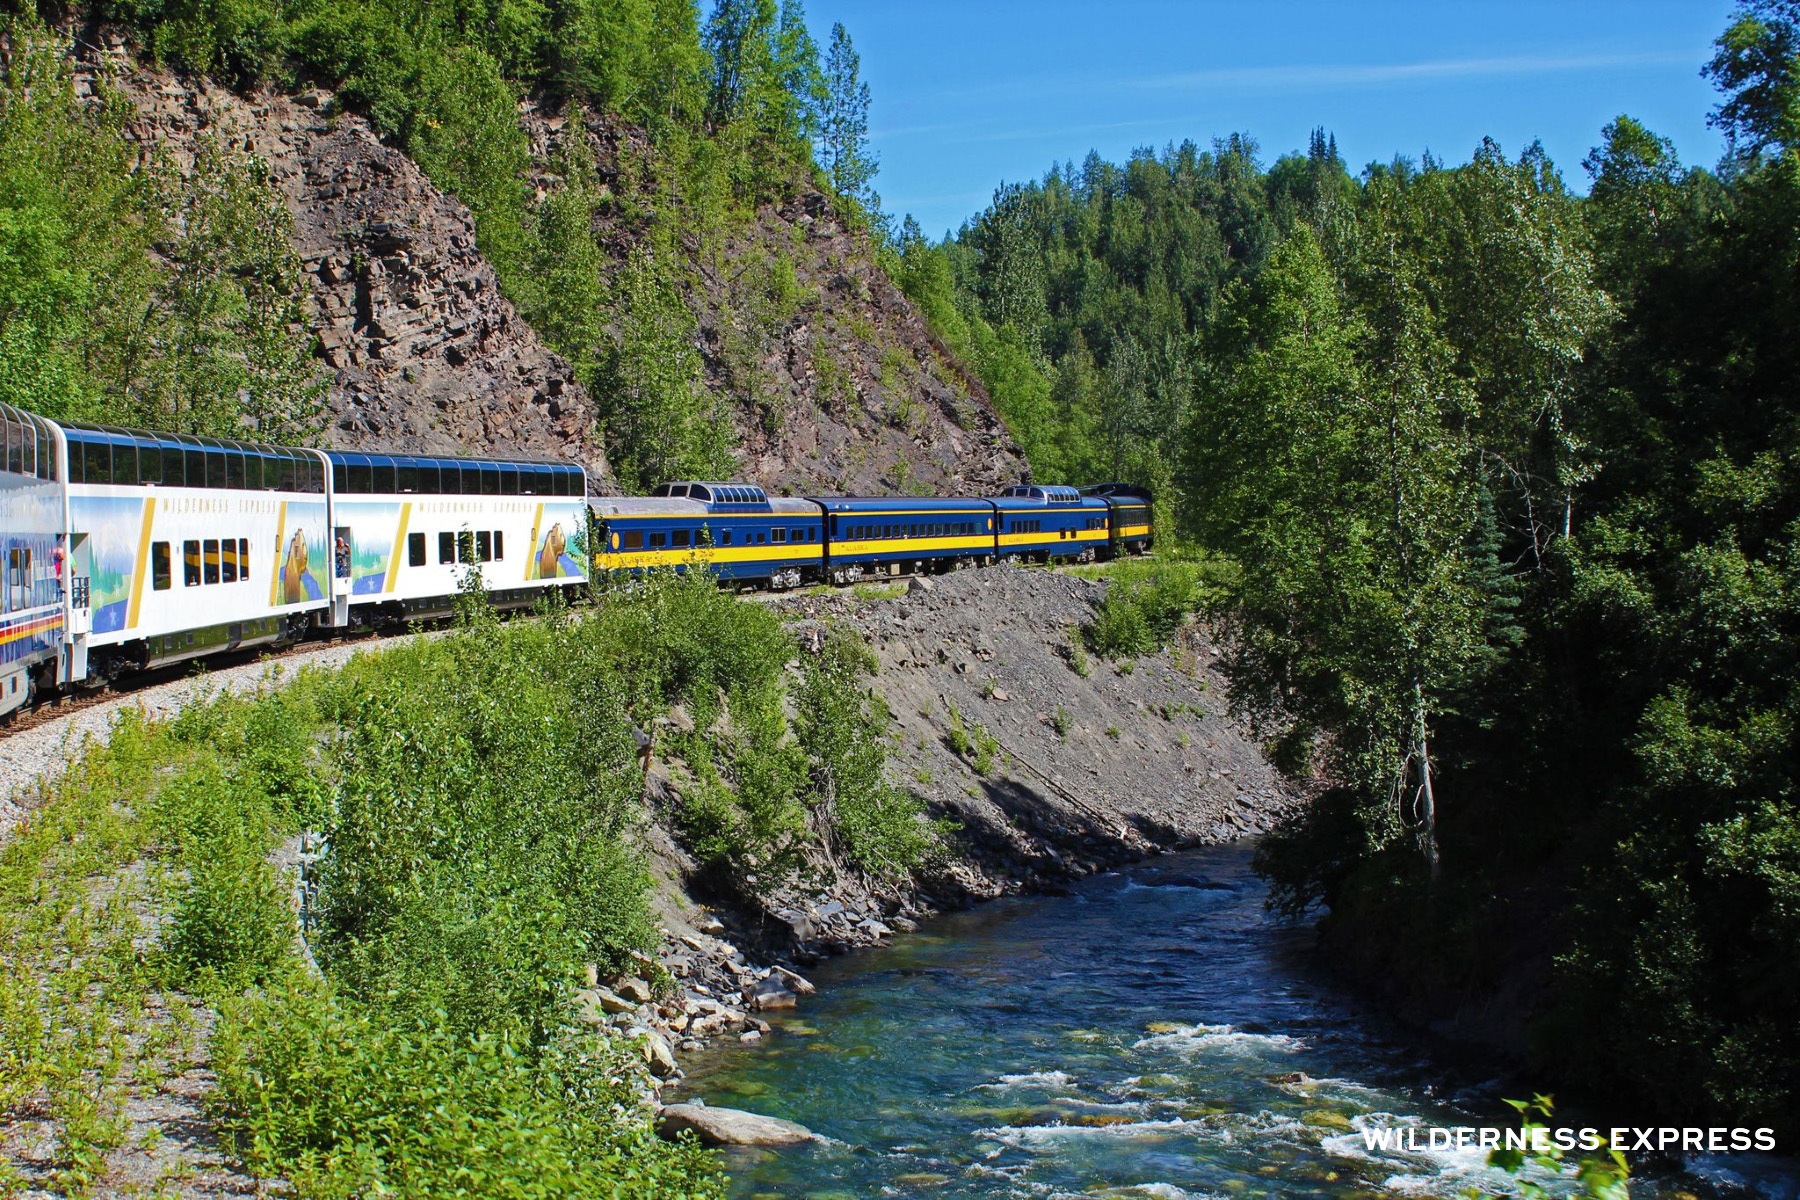 Alaska Railroad Train Experience